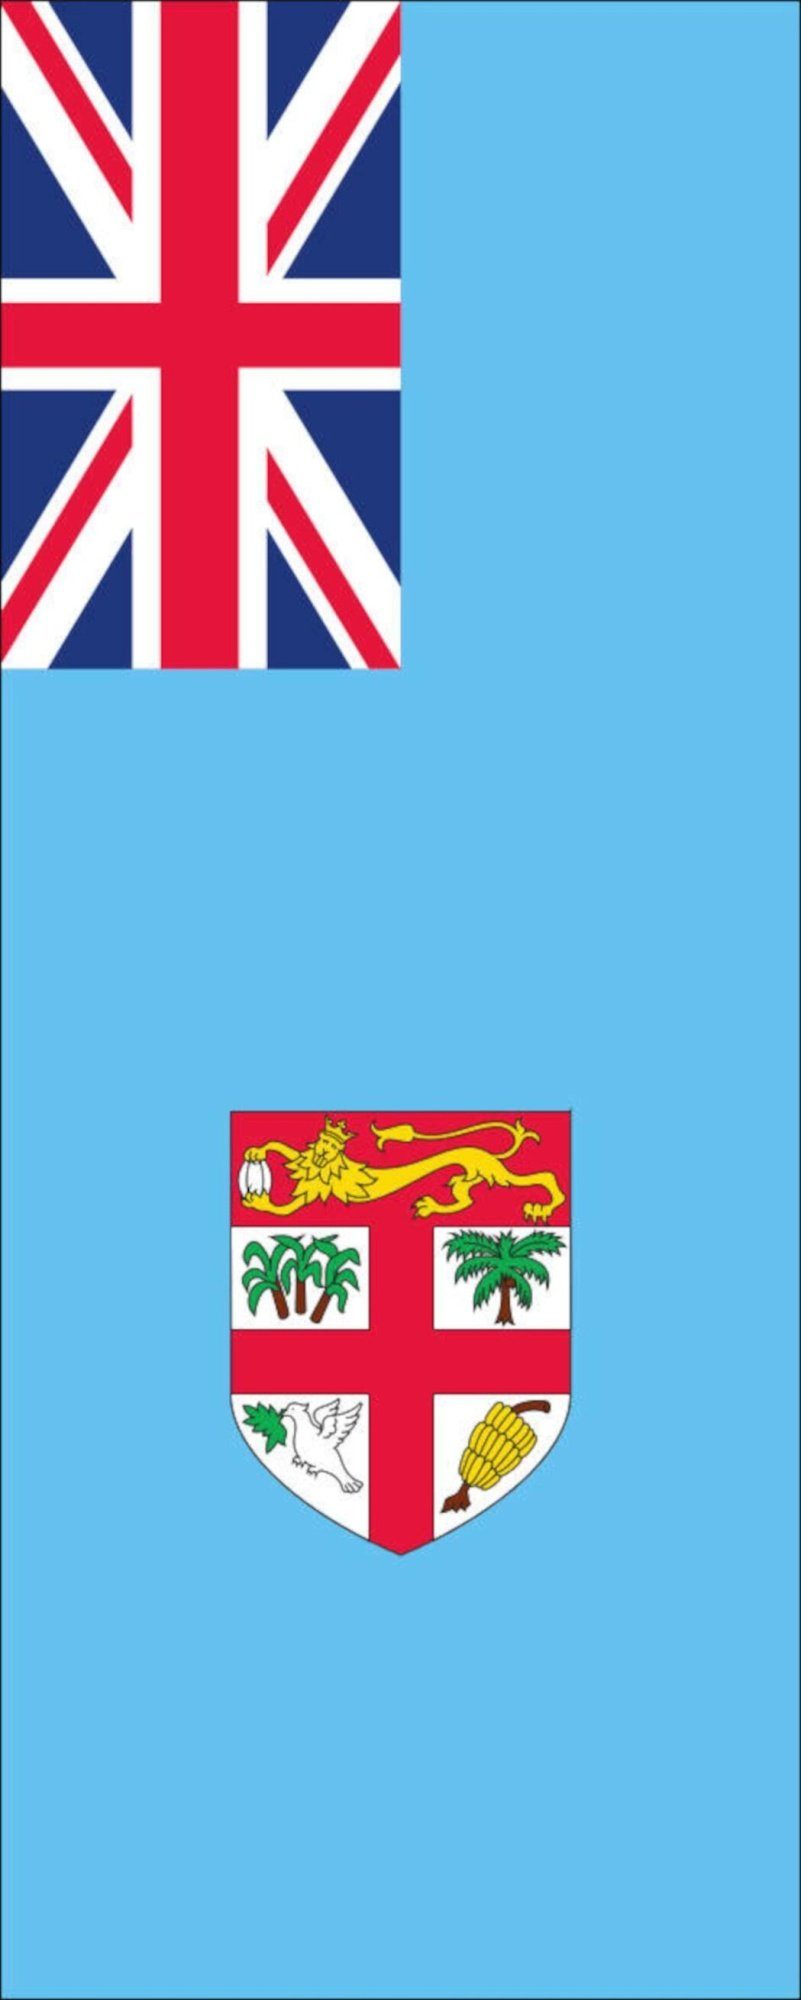 Fidschi g/m² Flagge Hochformat Flagge flaggenmeer 110